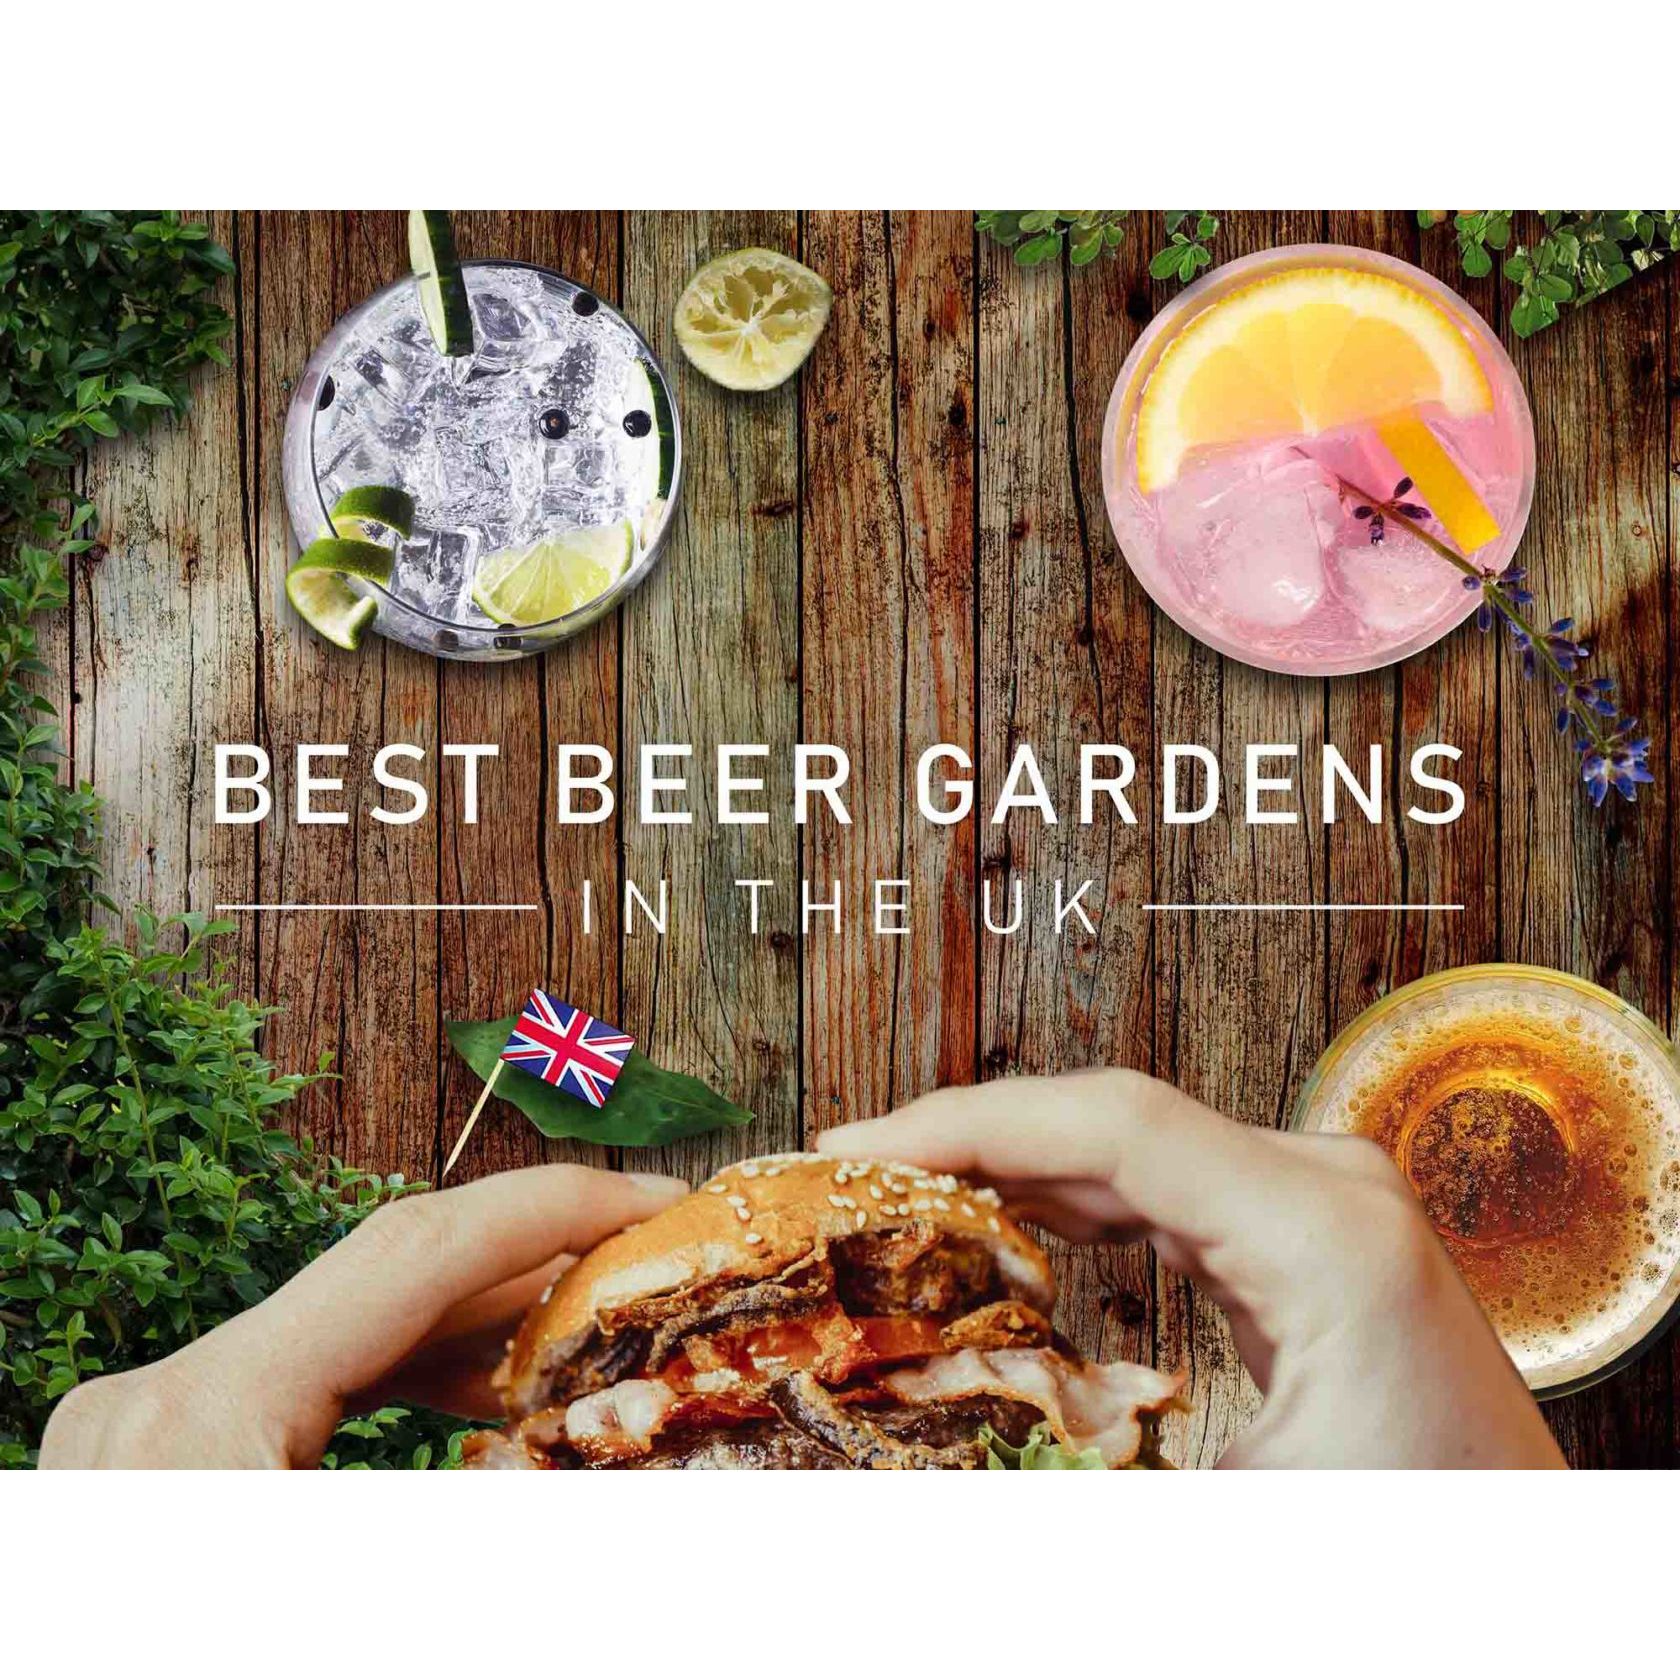 The Best Beer Gardens in the UK